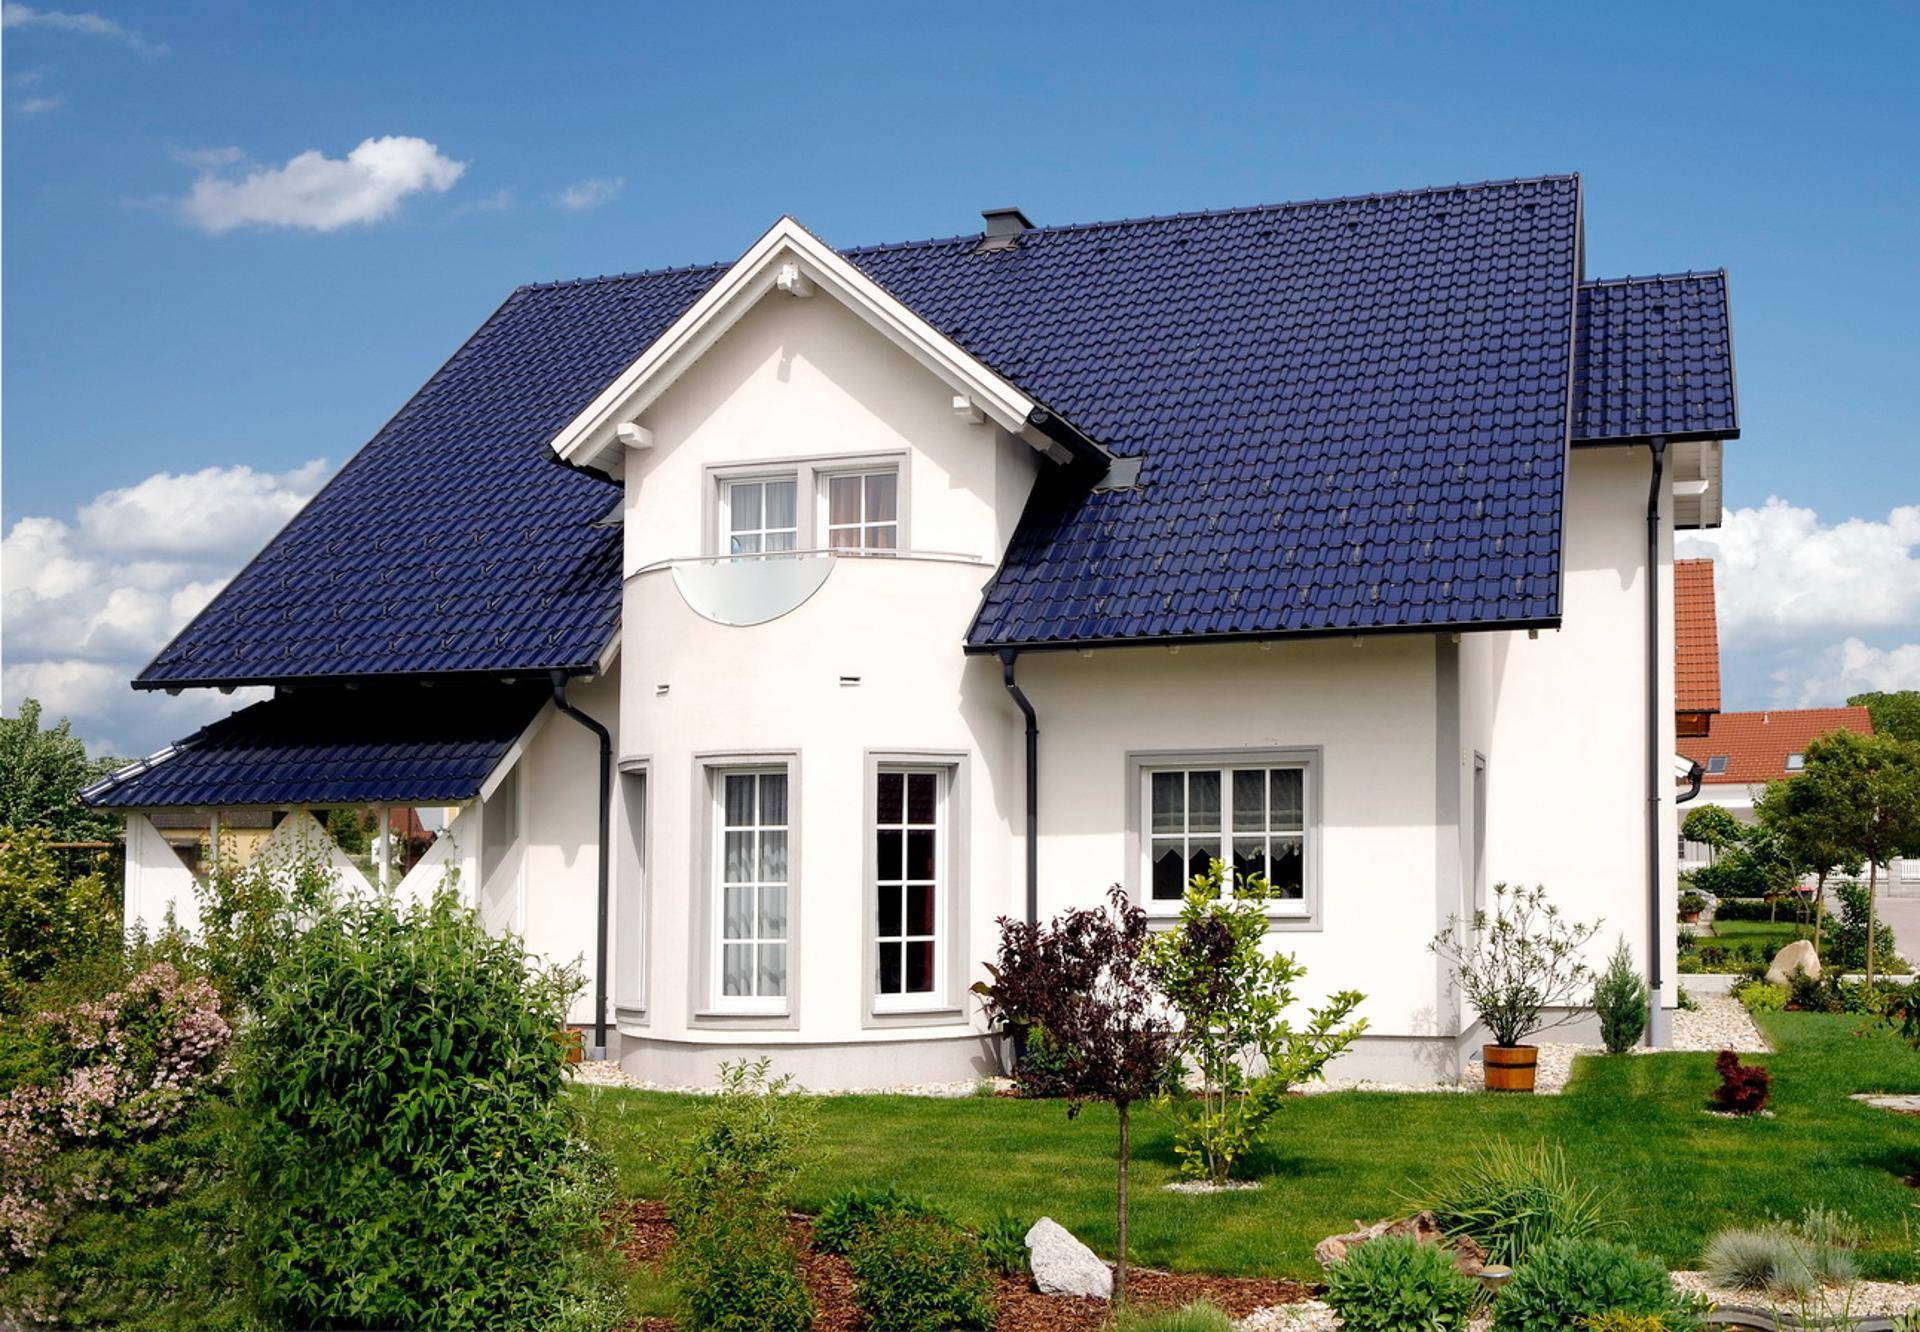 Значение цвета крыши для общего внешнего вида дома